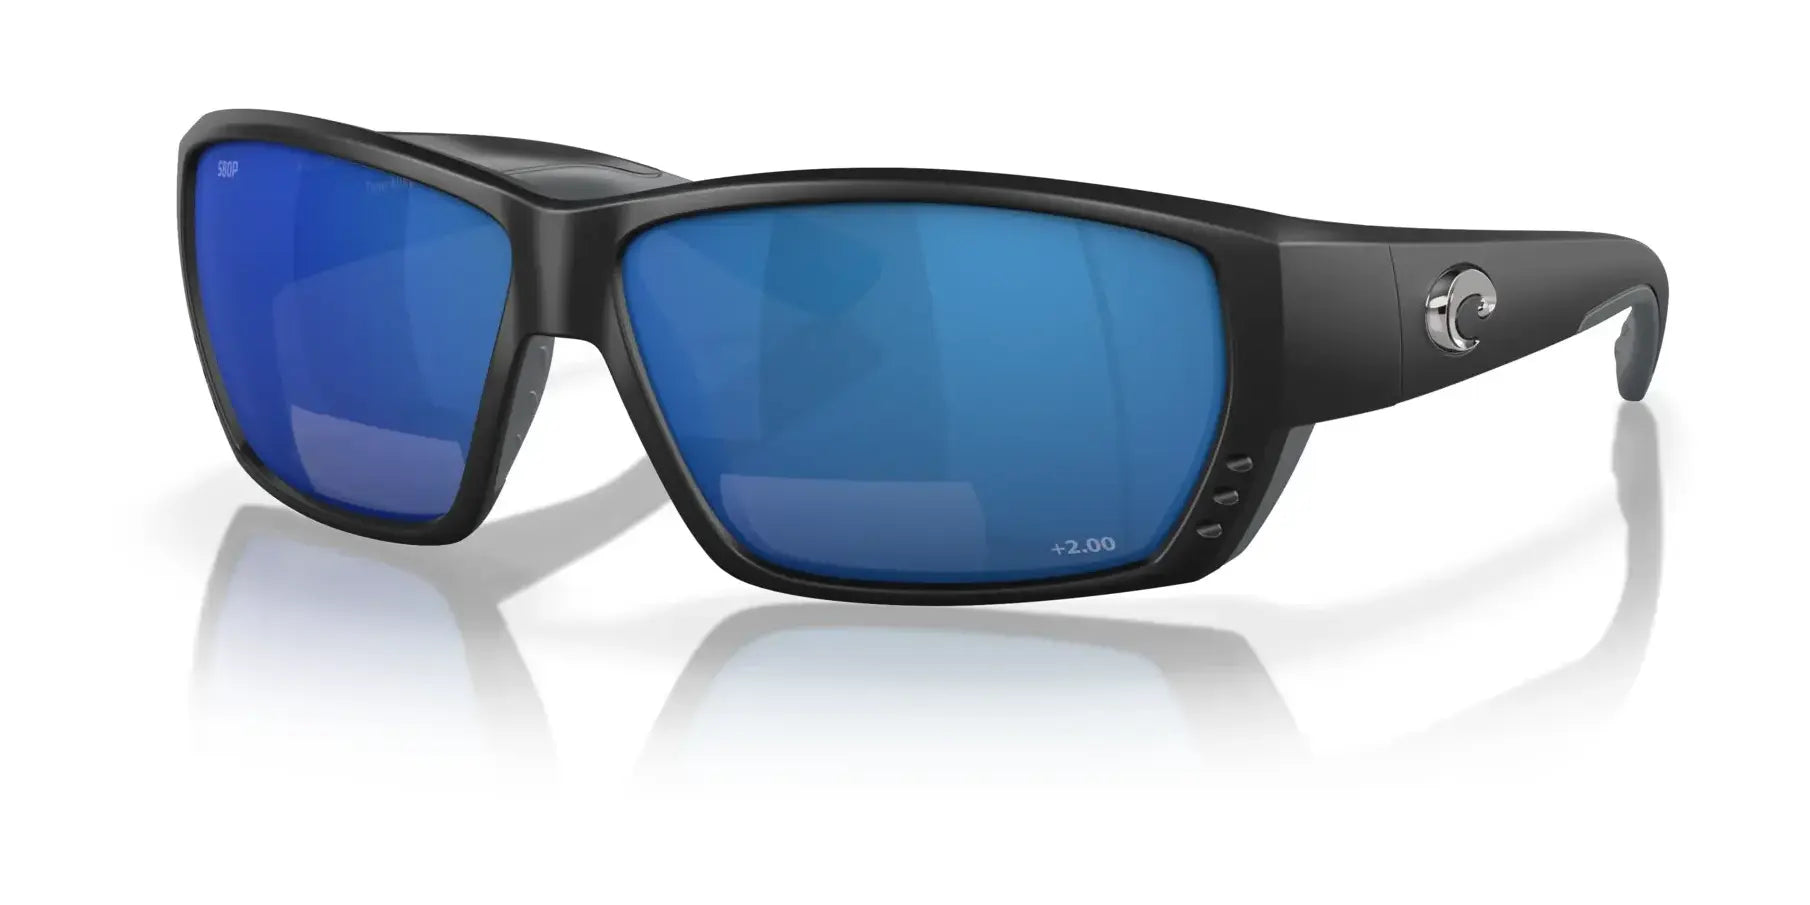 Costa TUNA ALLEY READERS 6S7008 Sunglasses Matte Black / Blue Mirror